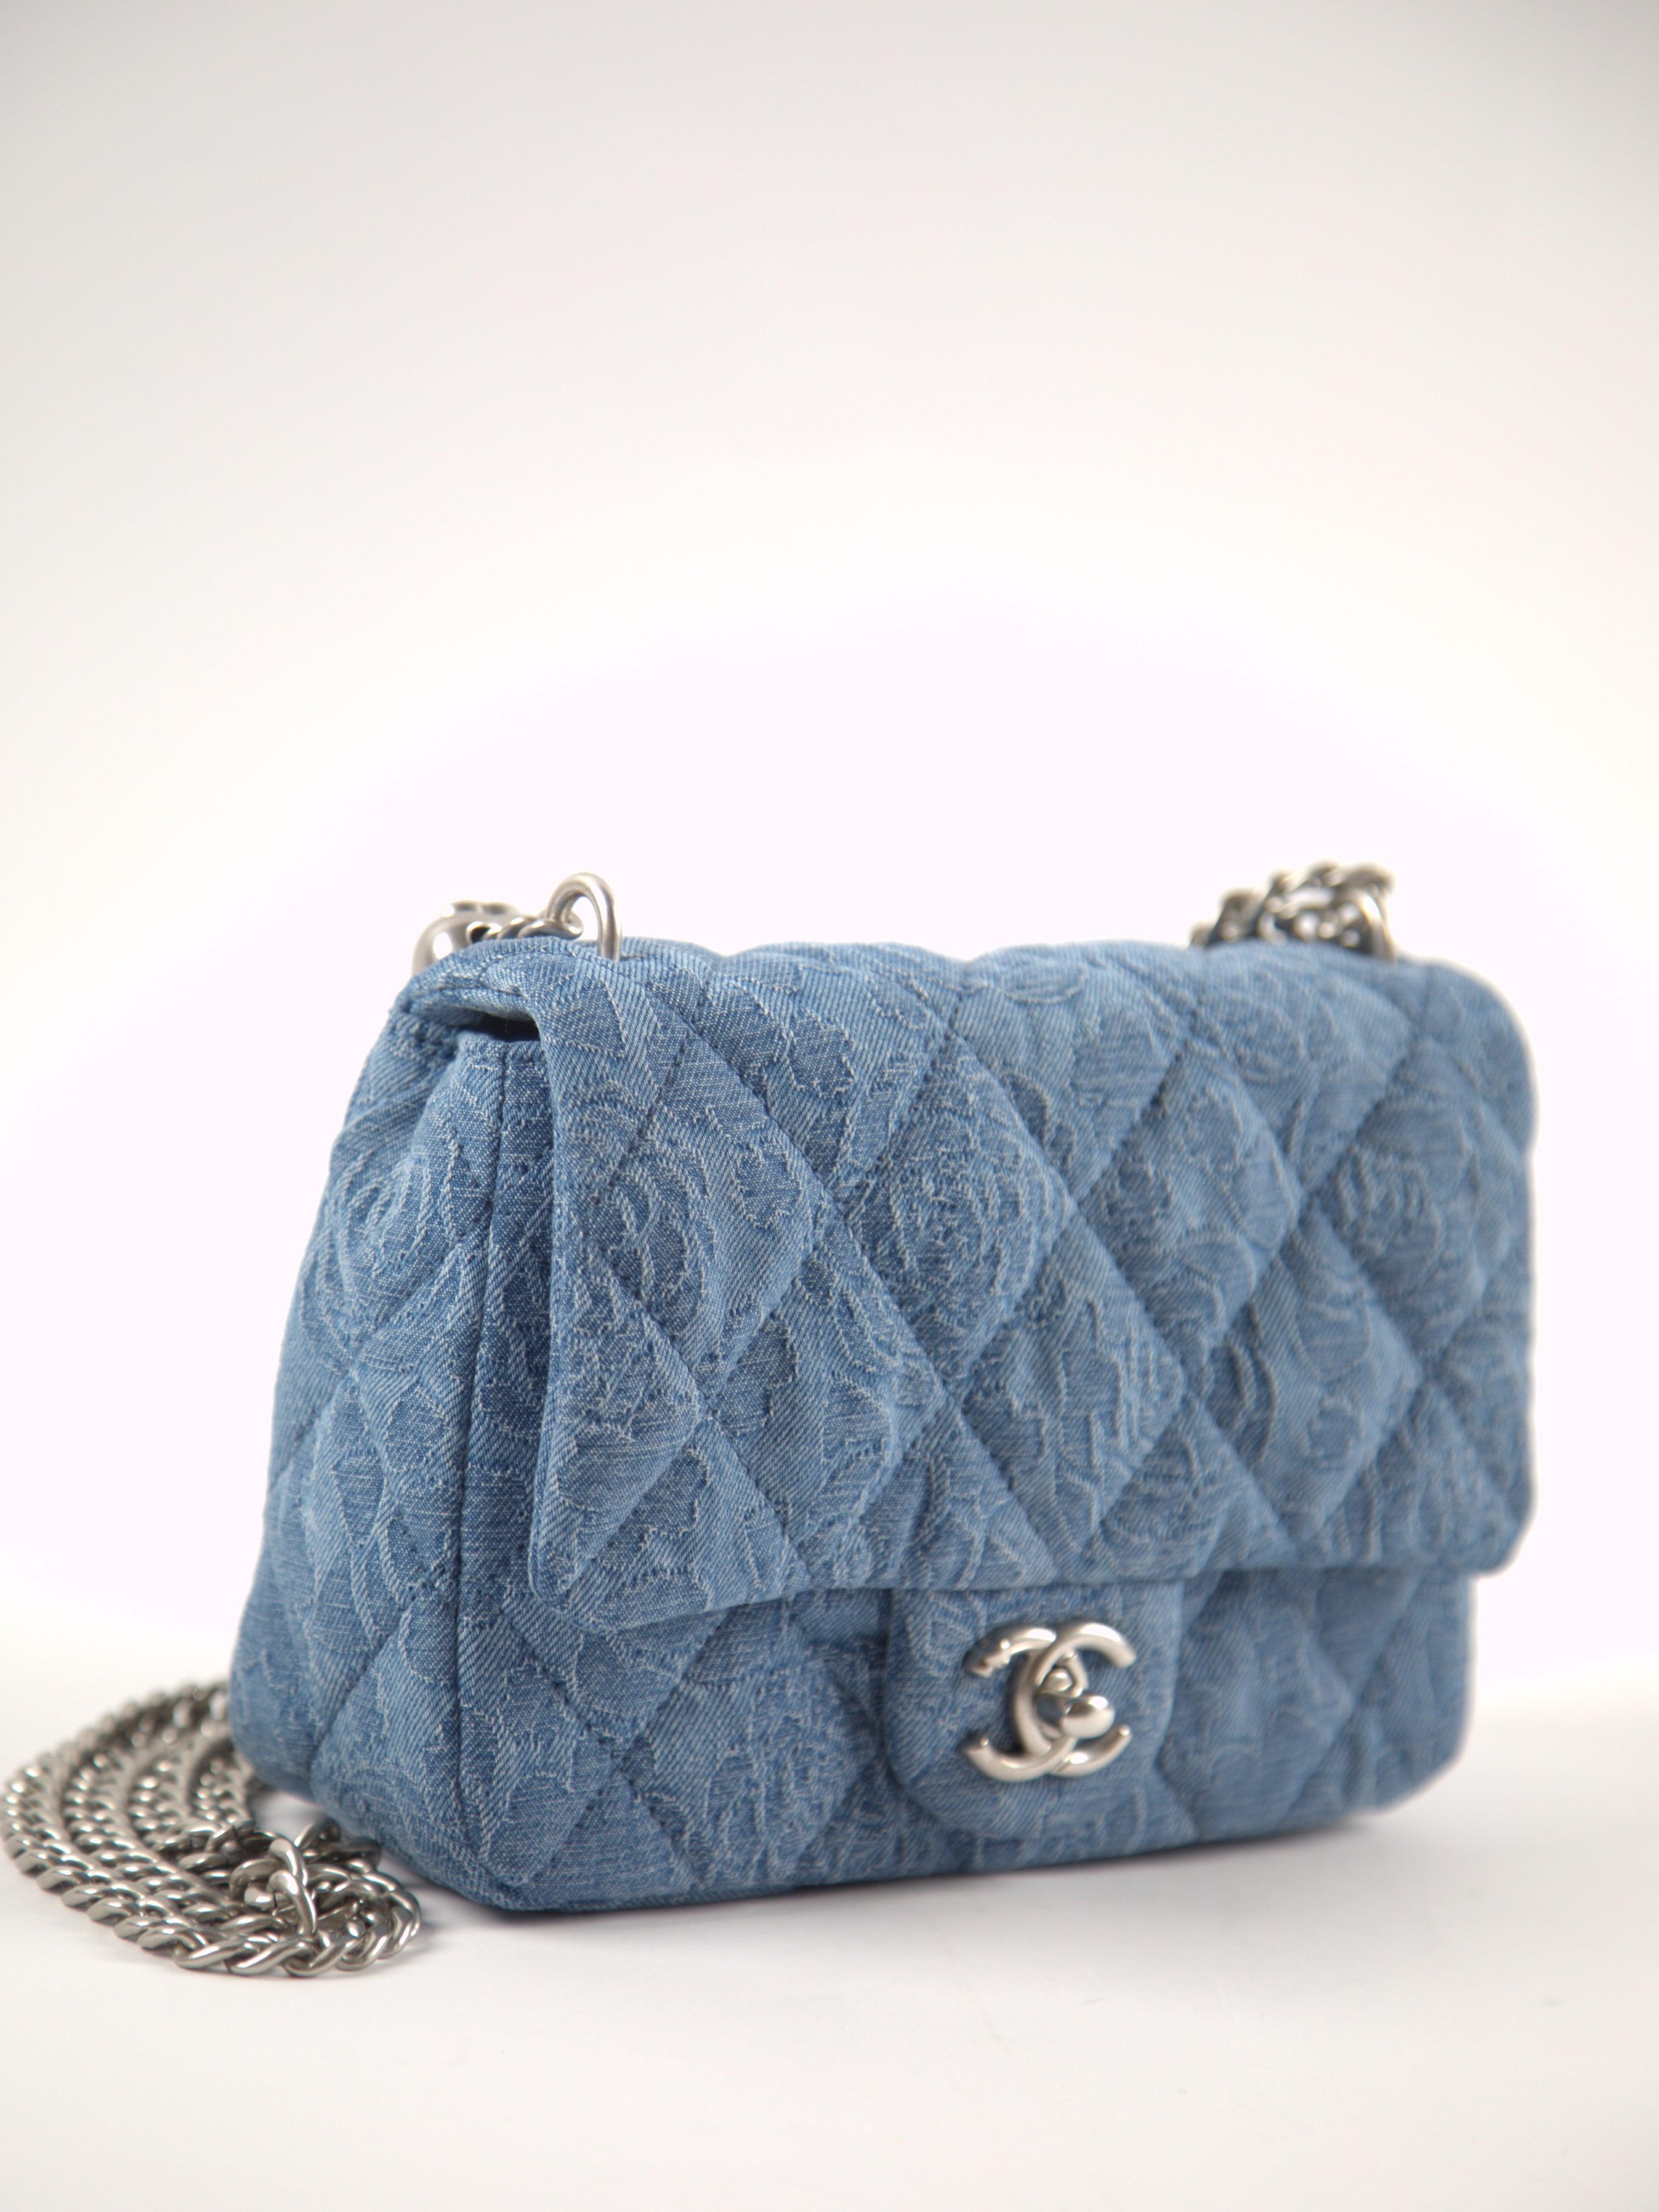 Chanel Frühjahr/Sommer 2023 Camellia Mini Square Flap Bag in Blau

Denim mit silberfarbener Hardware 

Begleitet von: Chanel-Schachtel, Staubbeutel, Mikrochip zur Authentifizierung, Pflegekarte und Schleife

Abmessungen: 14 × 20 × 8 cm 

Referenz 